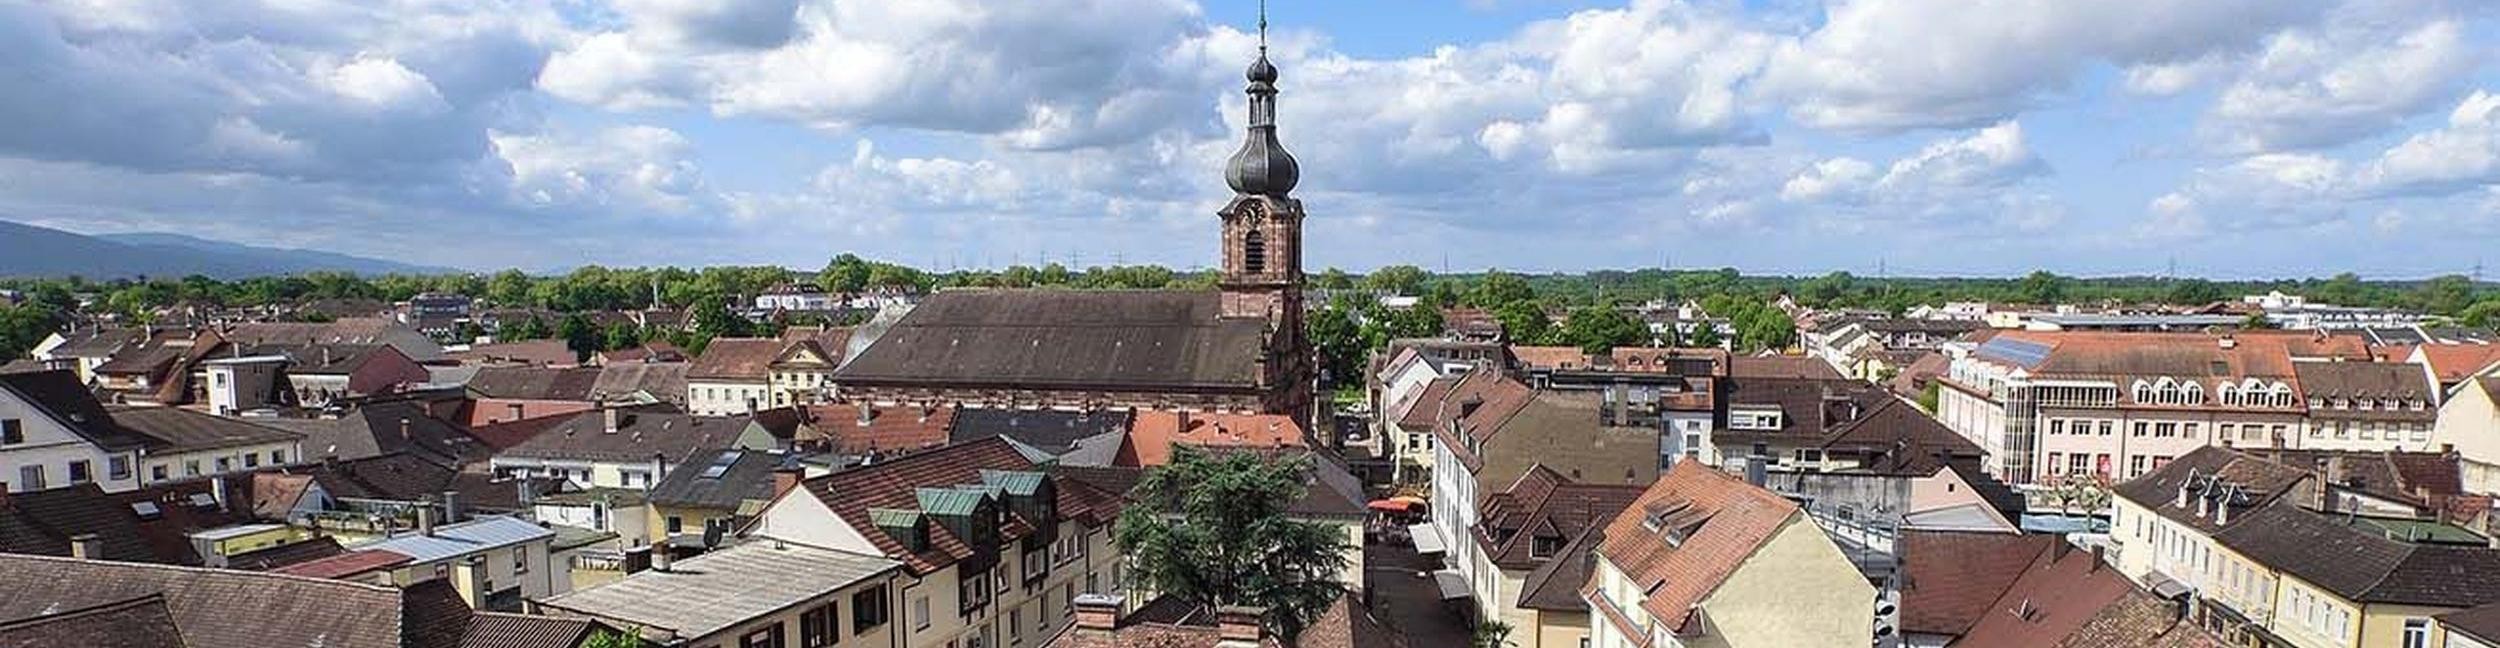 Le centre-ville vu d'en haut avec le clocher de l'église Saint Alexandre